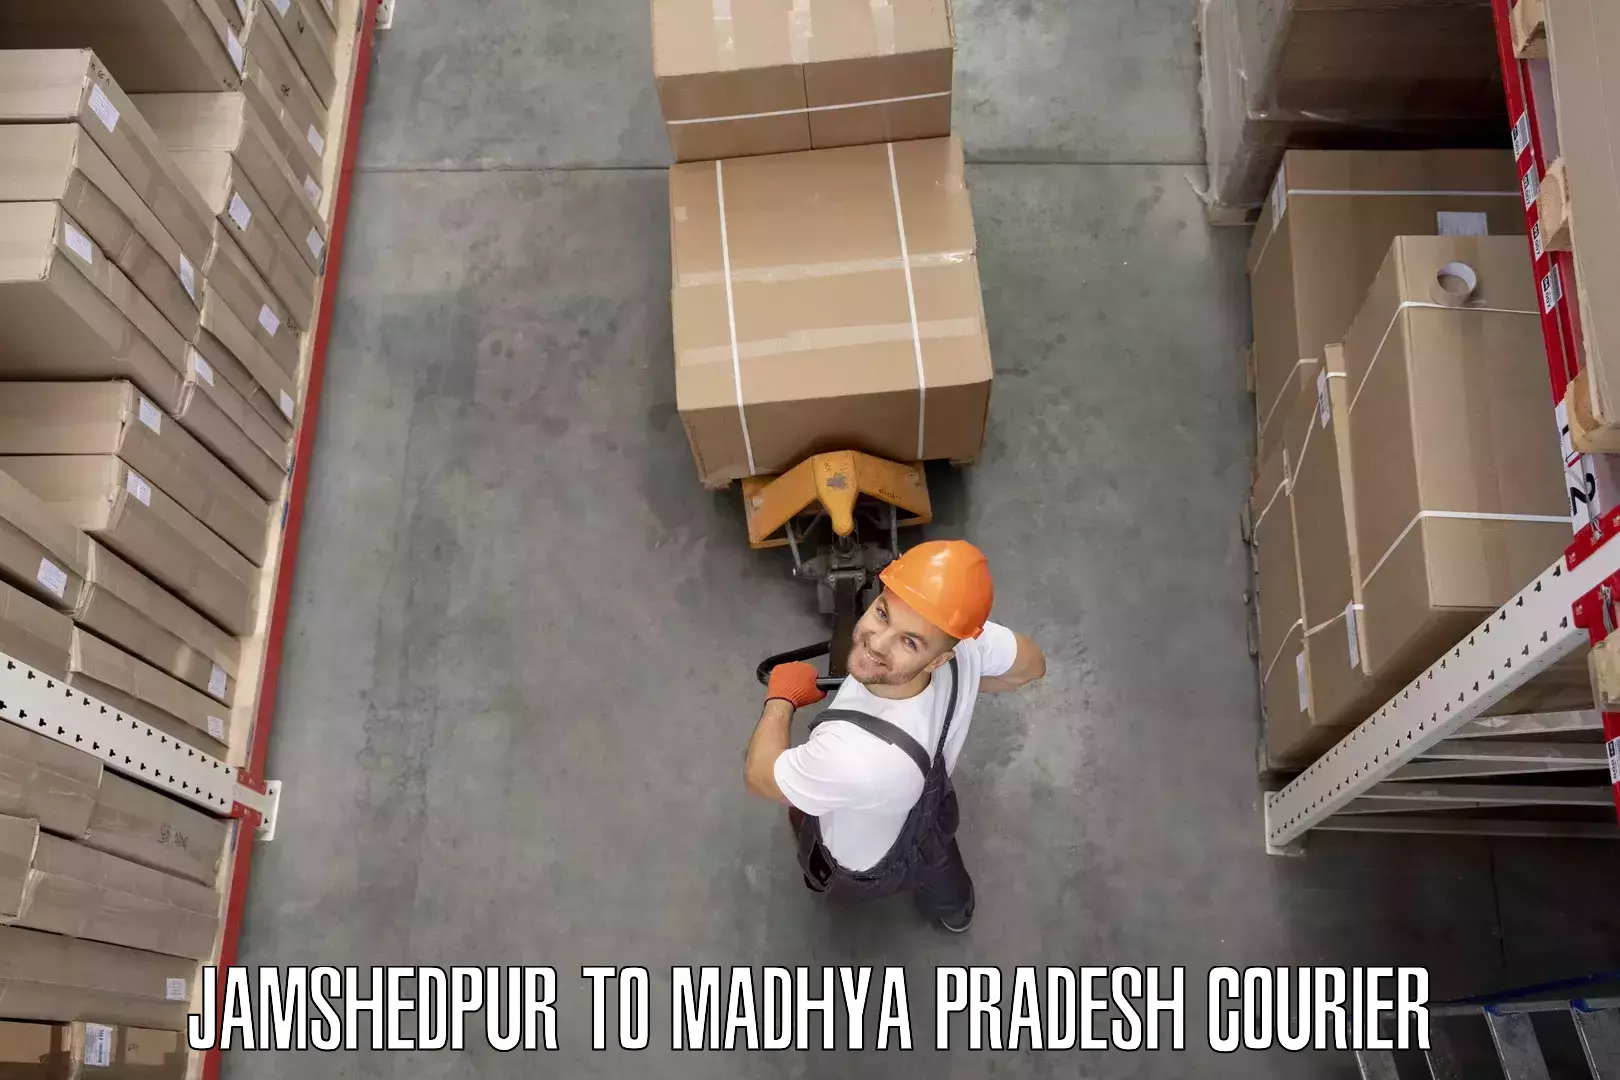 Furniture delivery service Jamshedpur to Karera